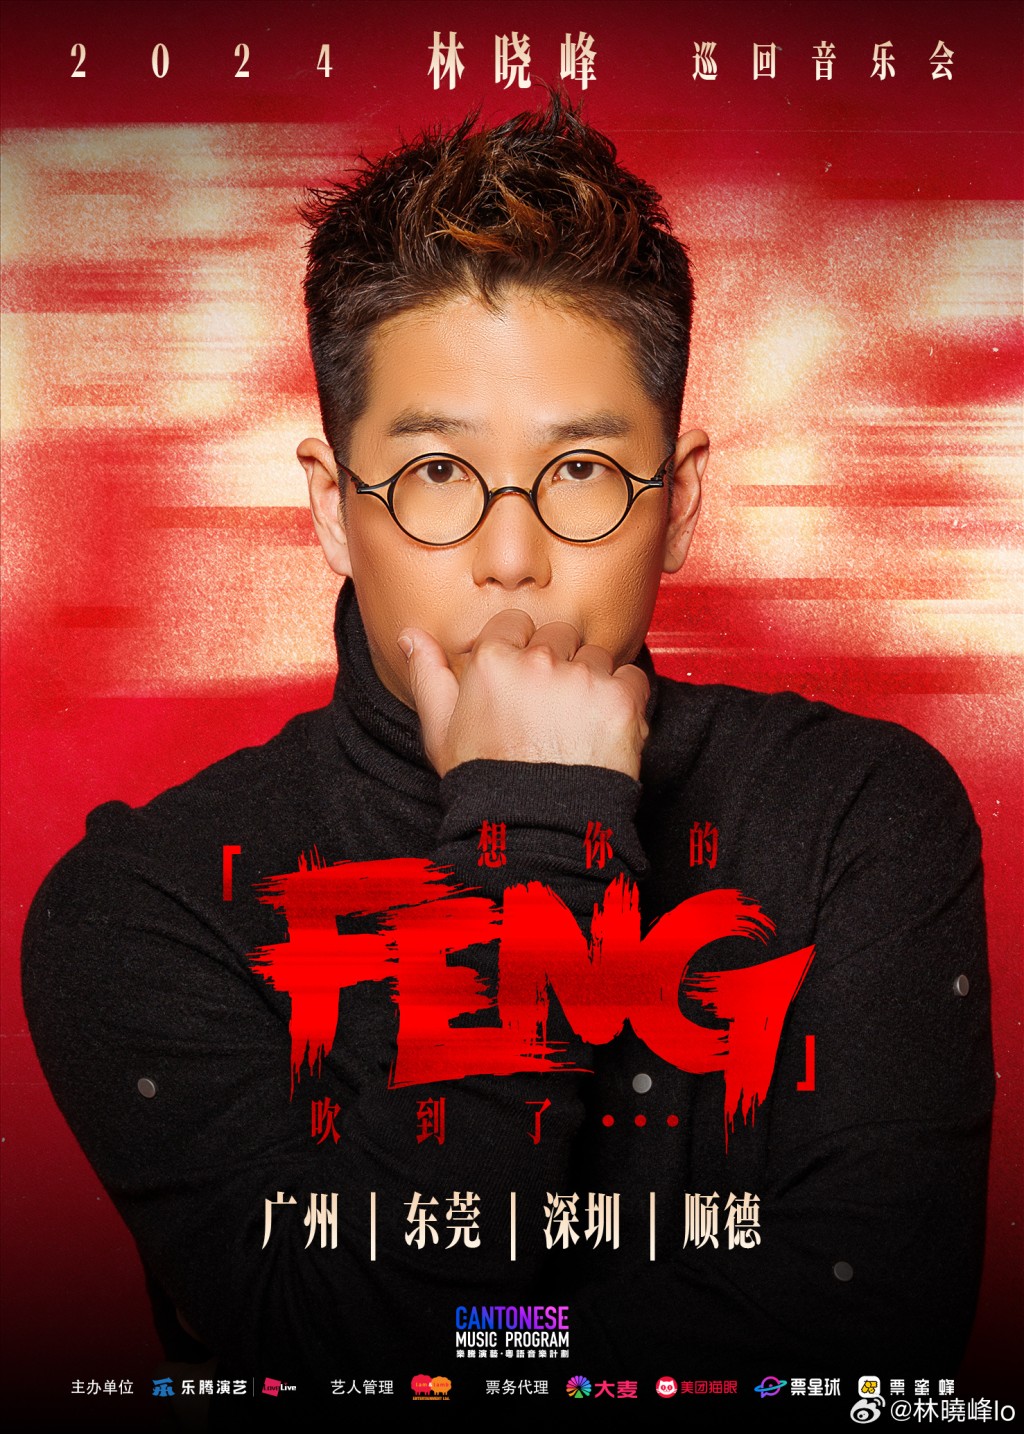 林晓峰日前在微博宣布将会举行首个巡回音乐会《想你的「FENG」》。